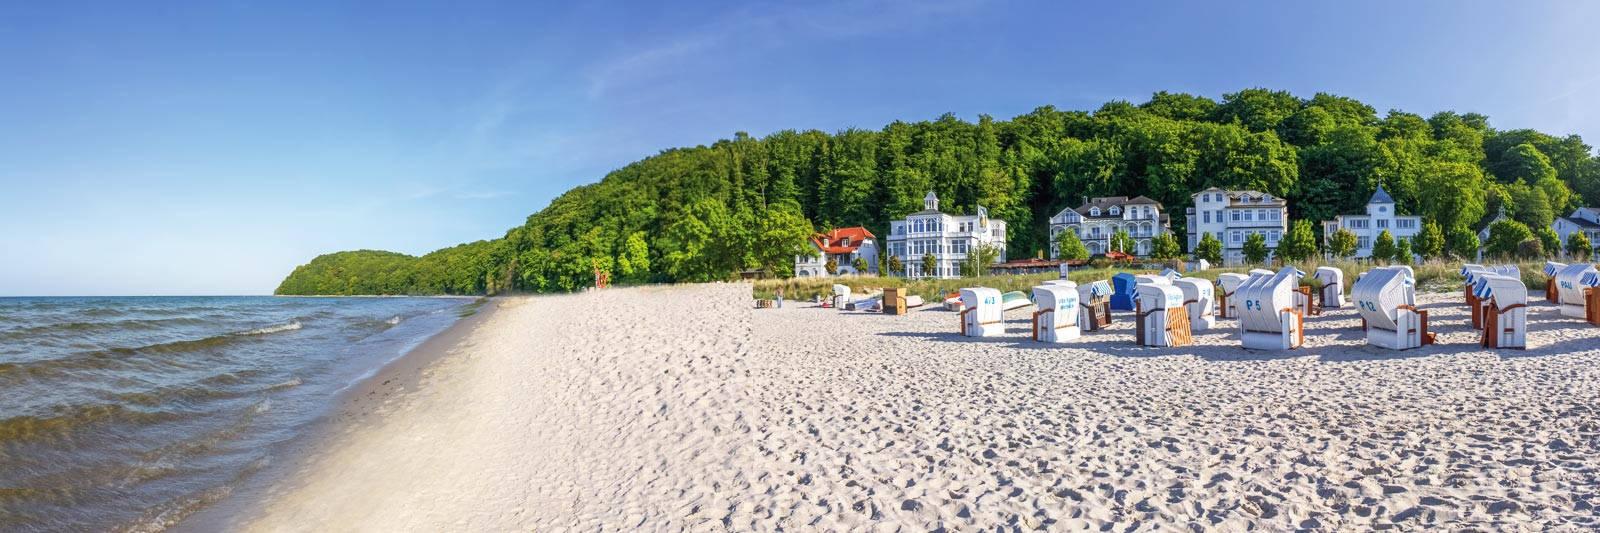 525 Ferienwohnungen und Ferienhäuser in Güstrow - tourist-online.de